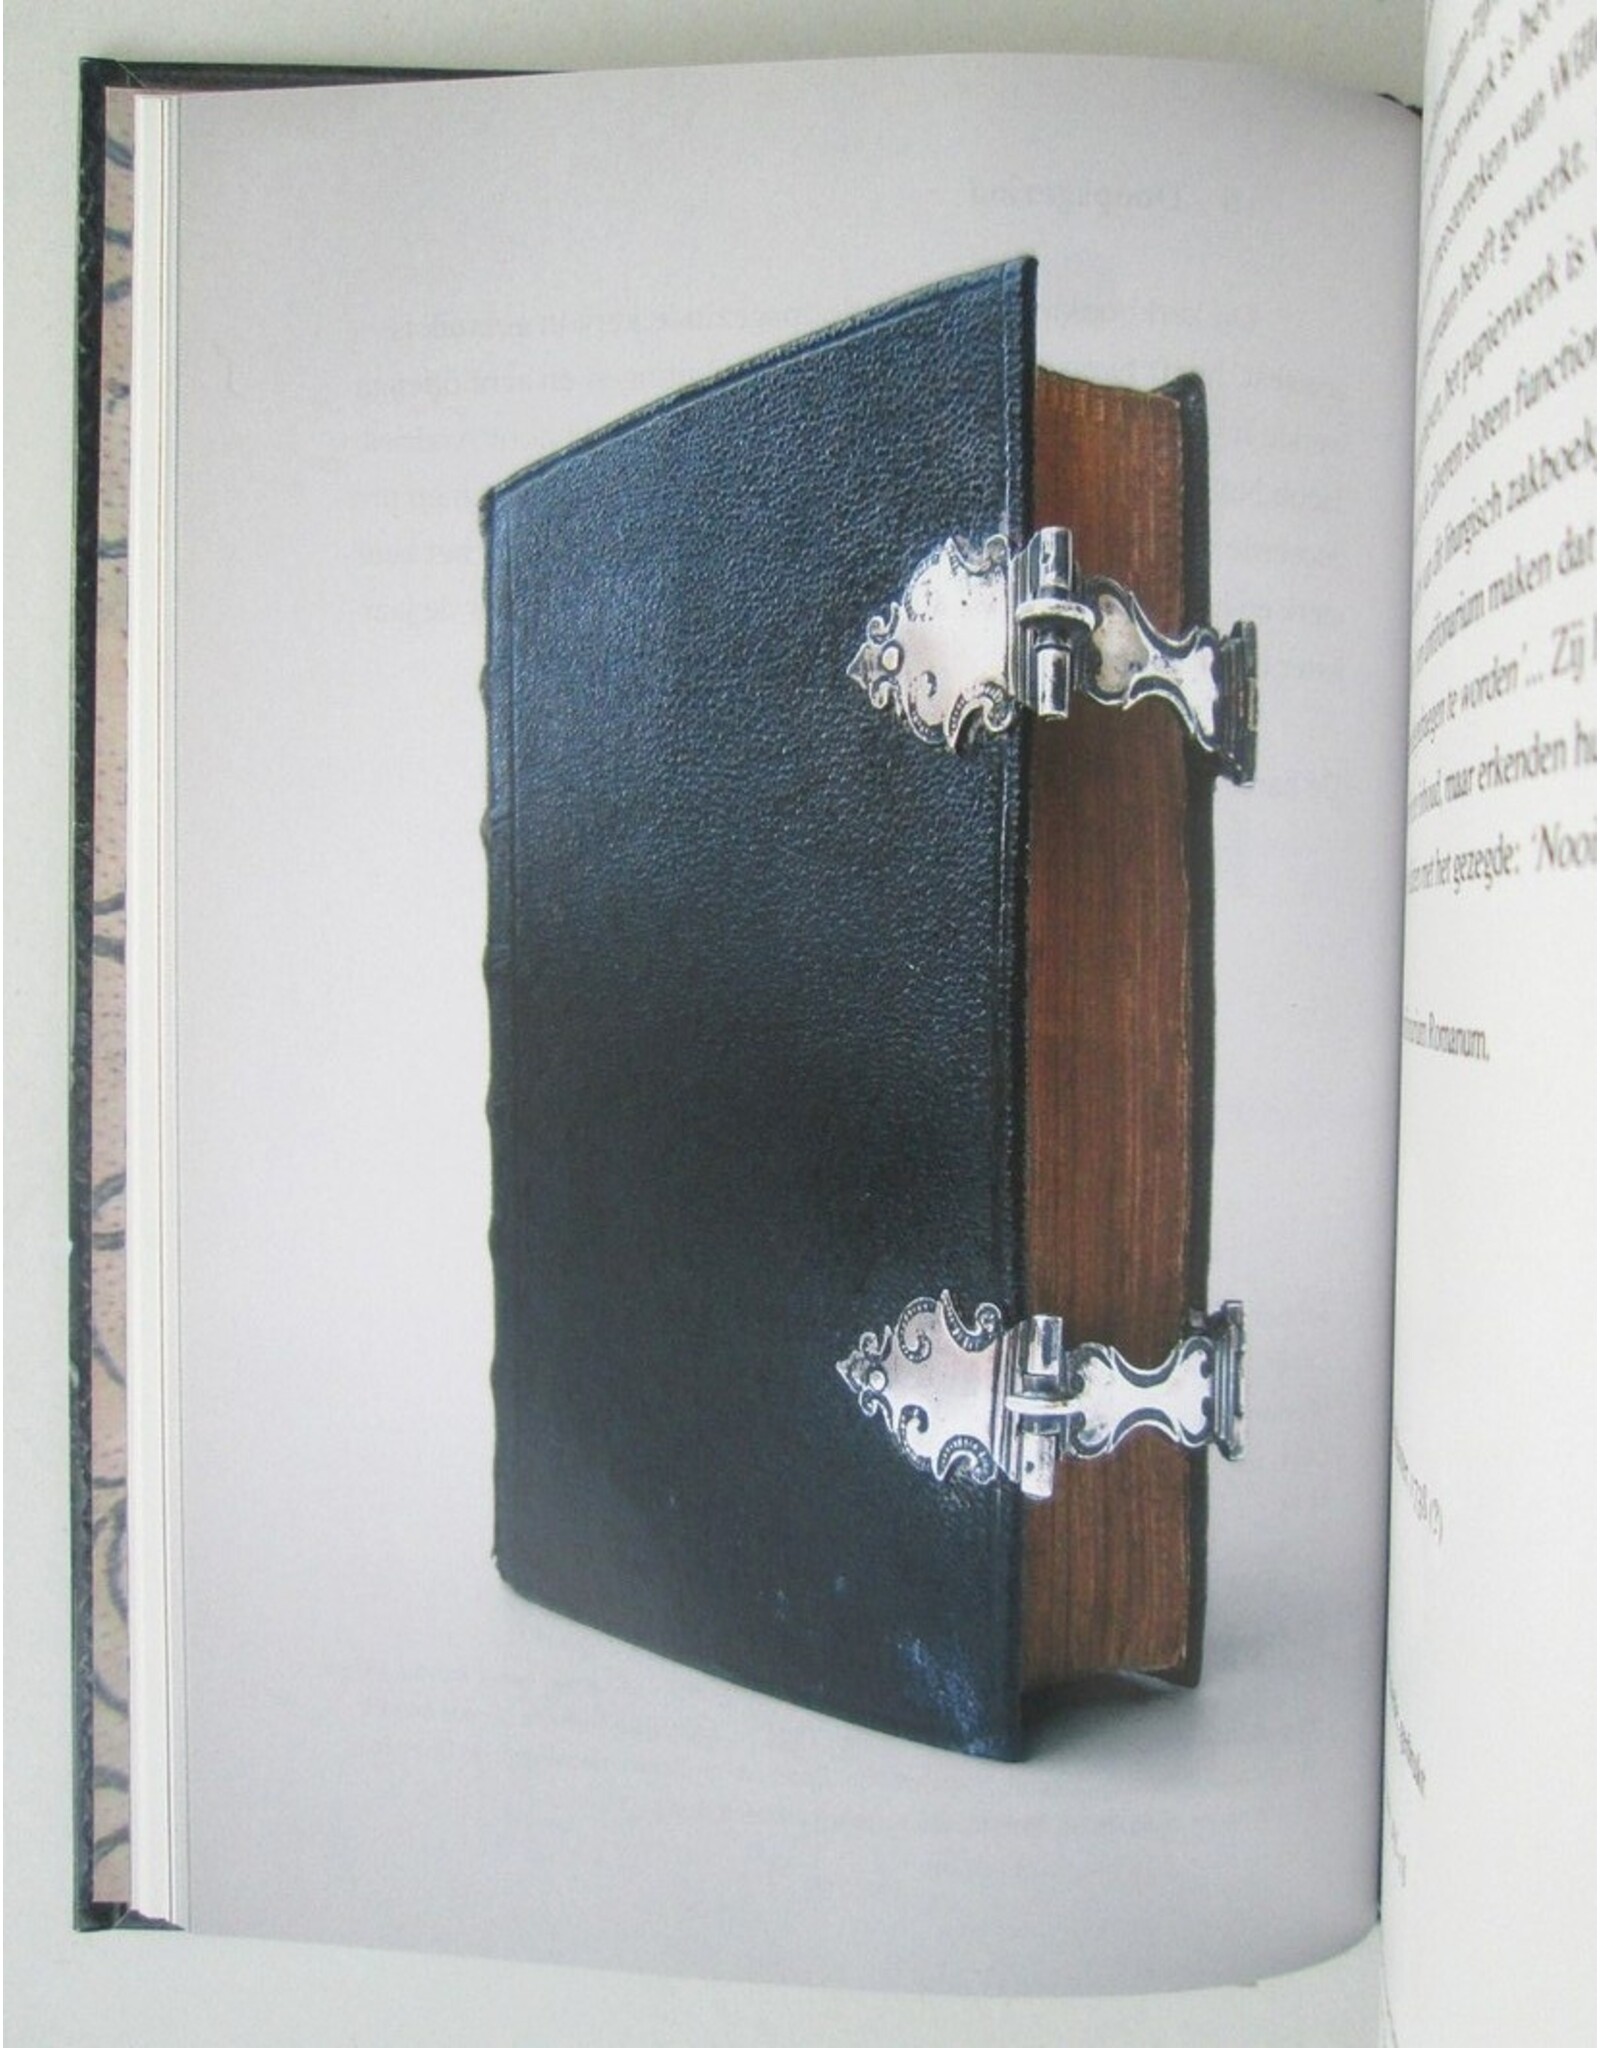 Bernard van Noordwijk - Zondags Zilver. Drie eeuwen versierde kerkboekjes. Met bijdragen van Hermine Pool [en] Jan Storm van Leeuwen